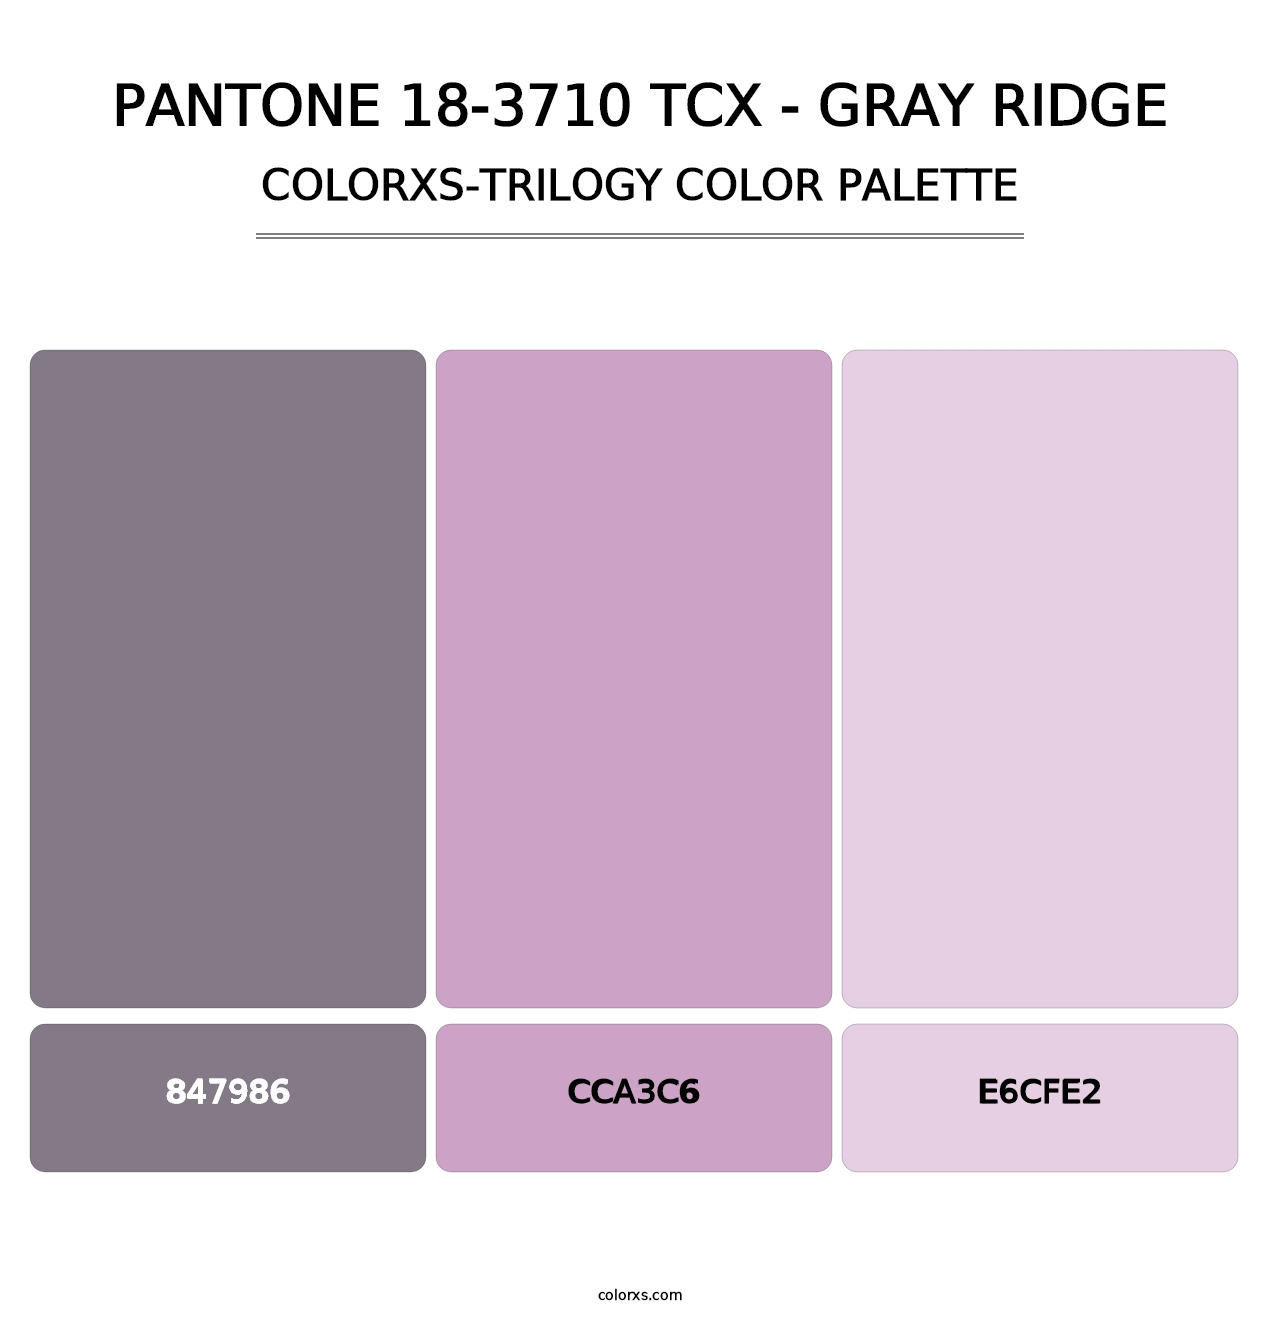 PANTONE 18-3710 TCX - Gray Ridge - Colorxs Trilogy Palette